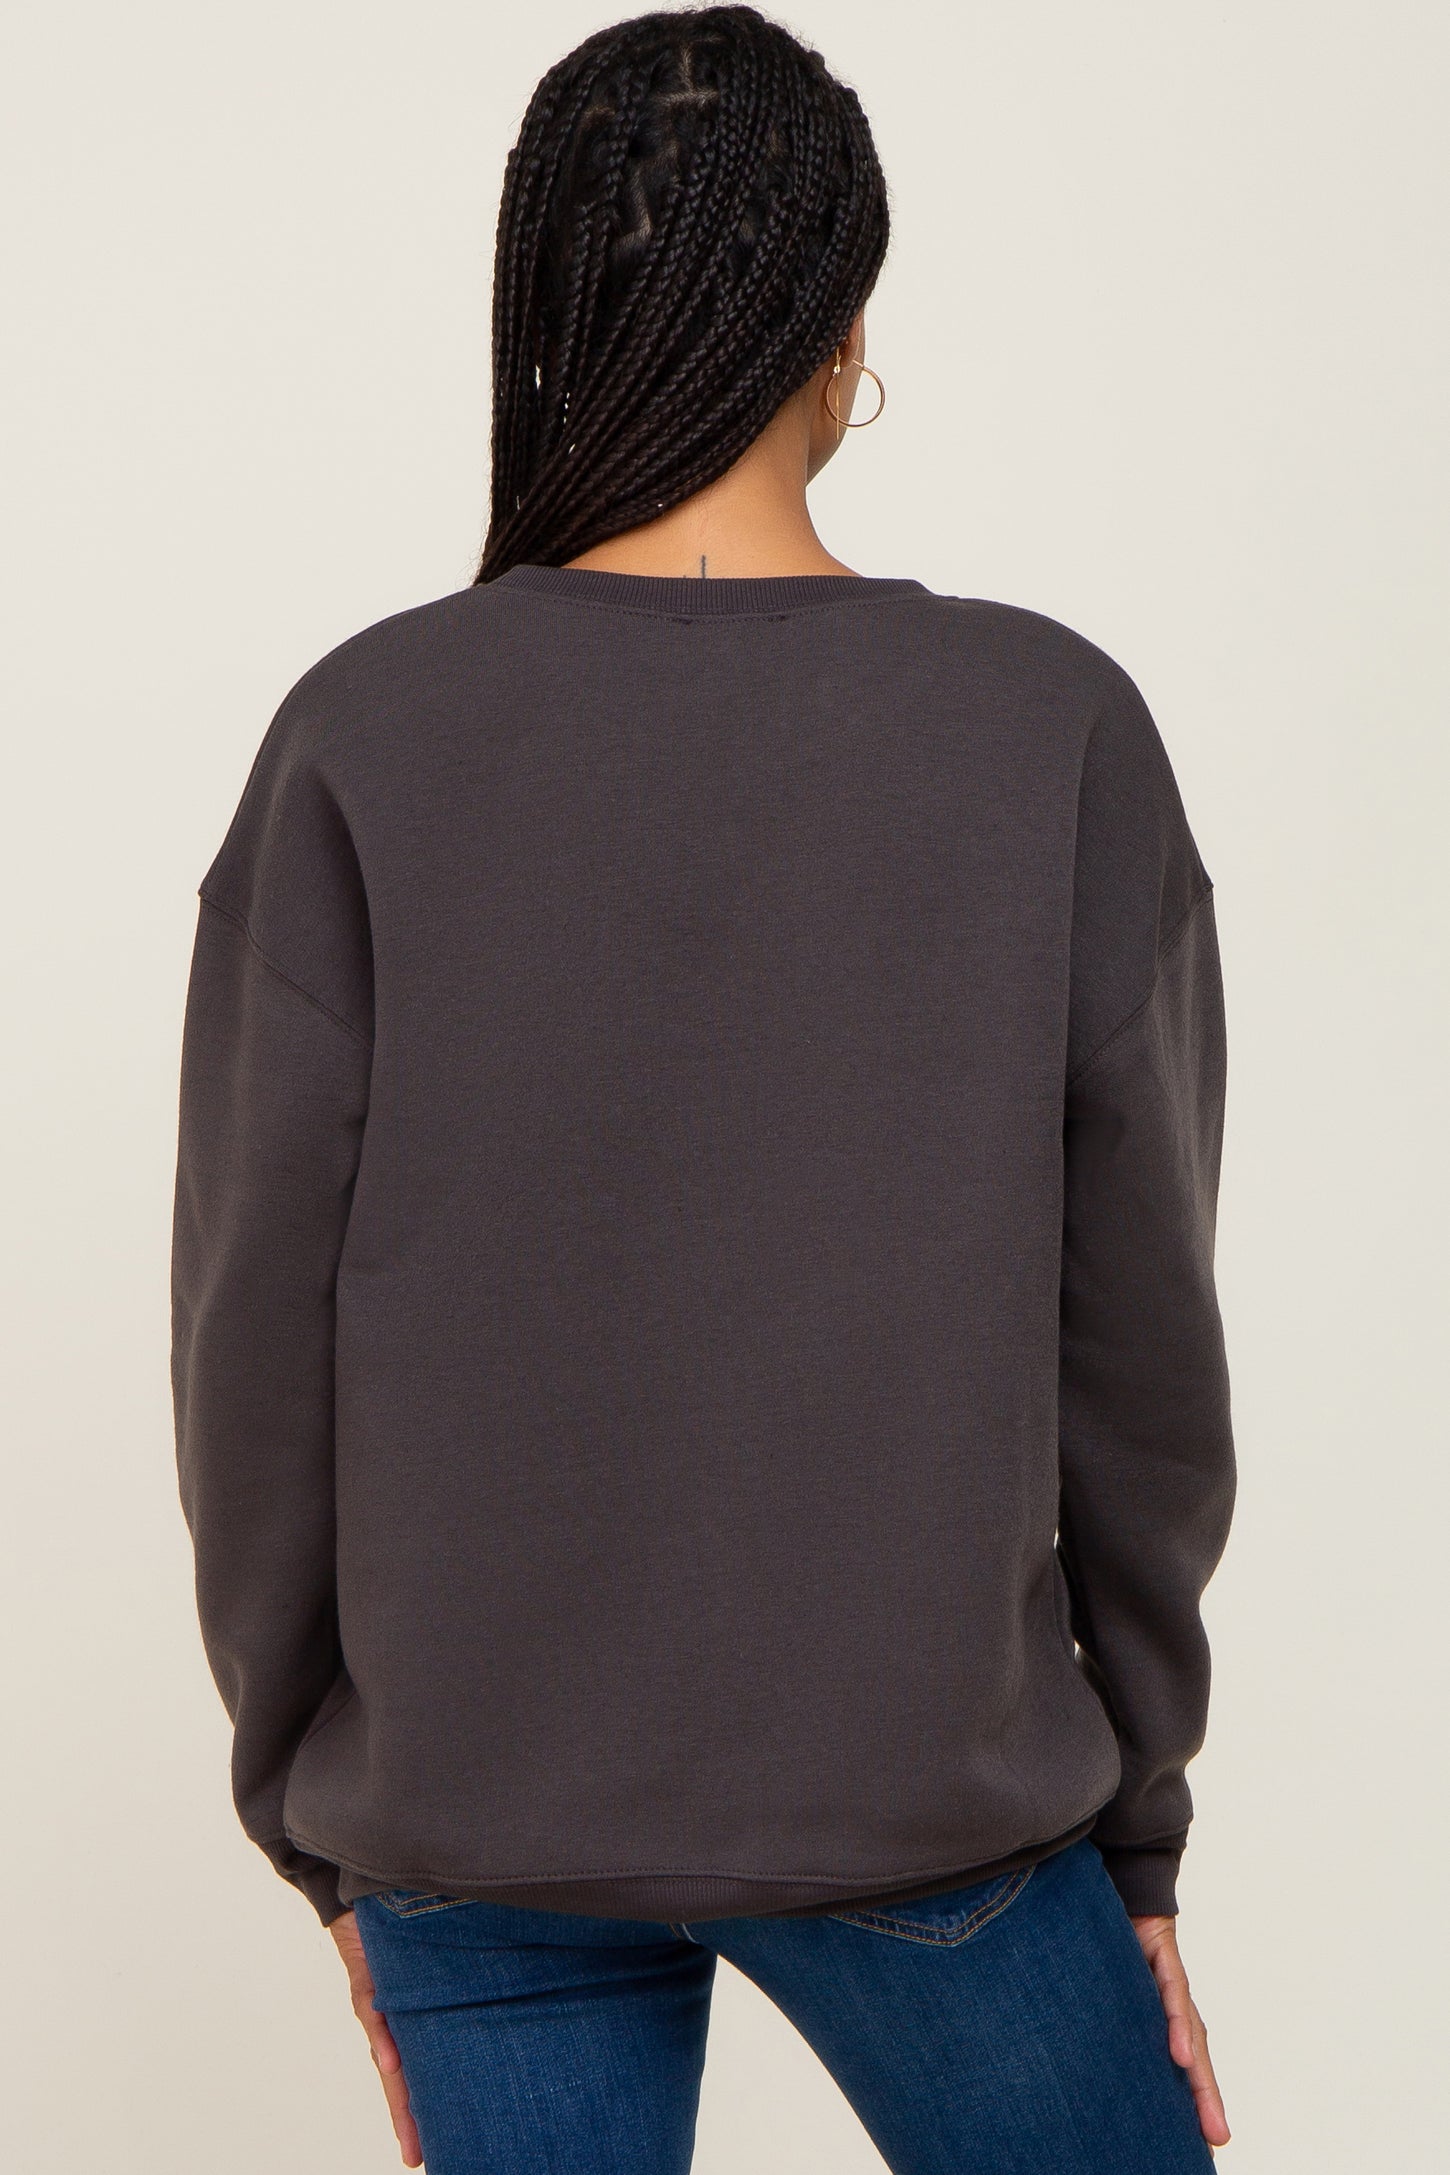 Charcoal Basic Sweatshirt